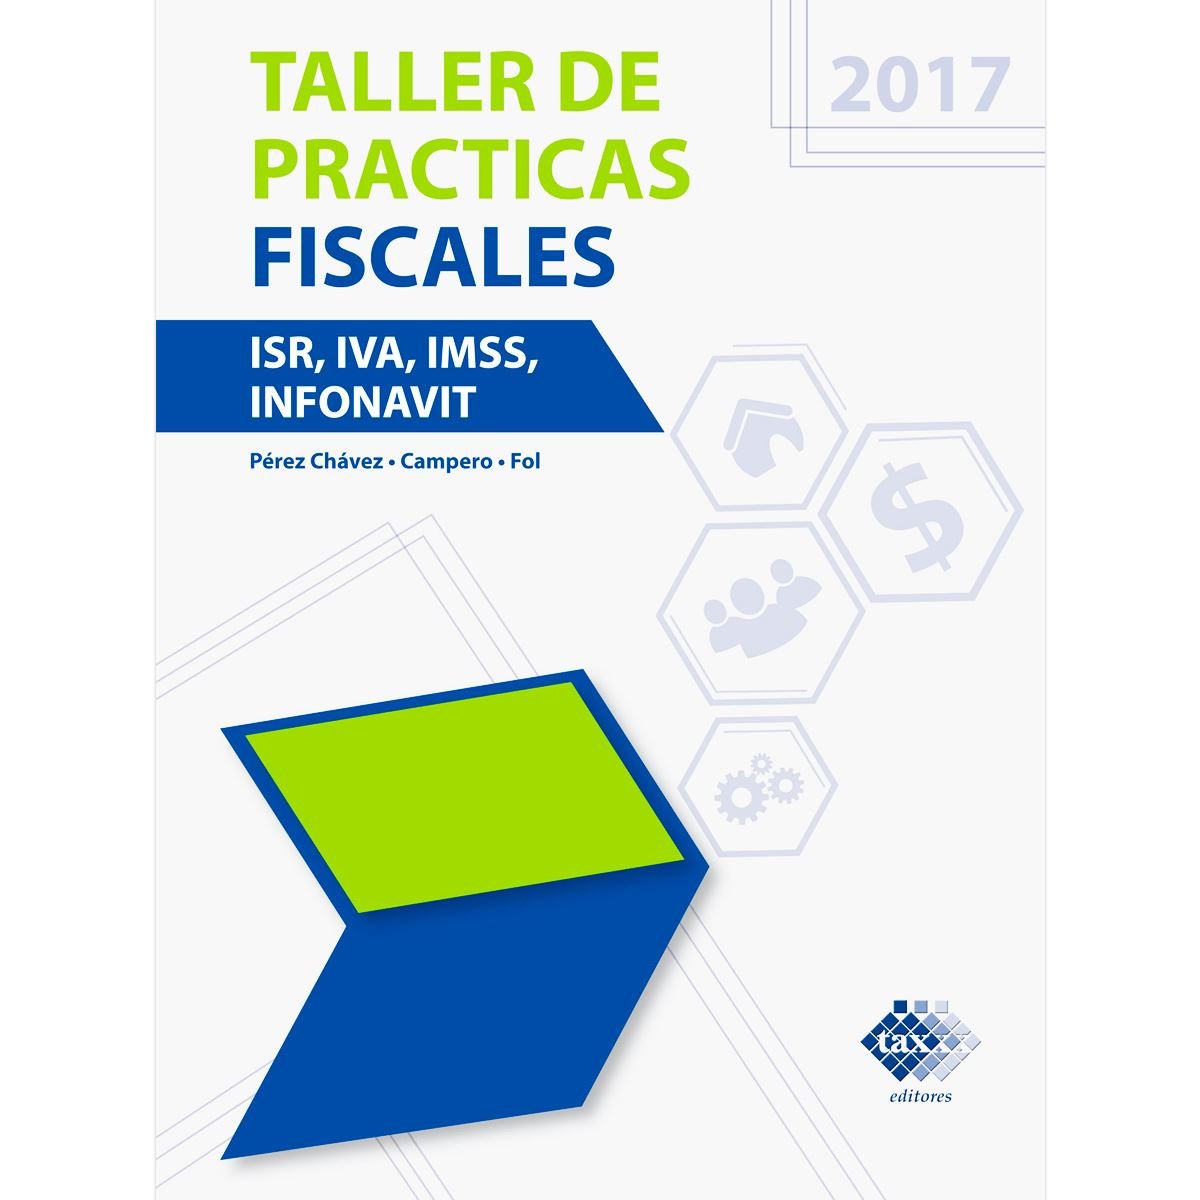 Taller de Practicas Fiscales. ISR, IVA, IMSS Infonavit 2017